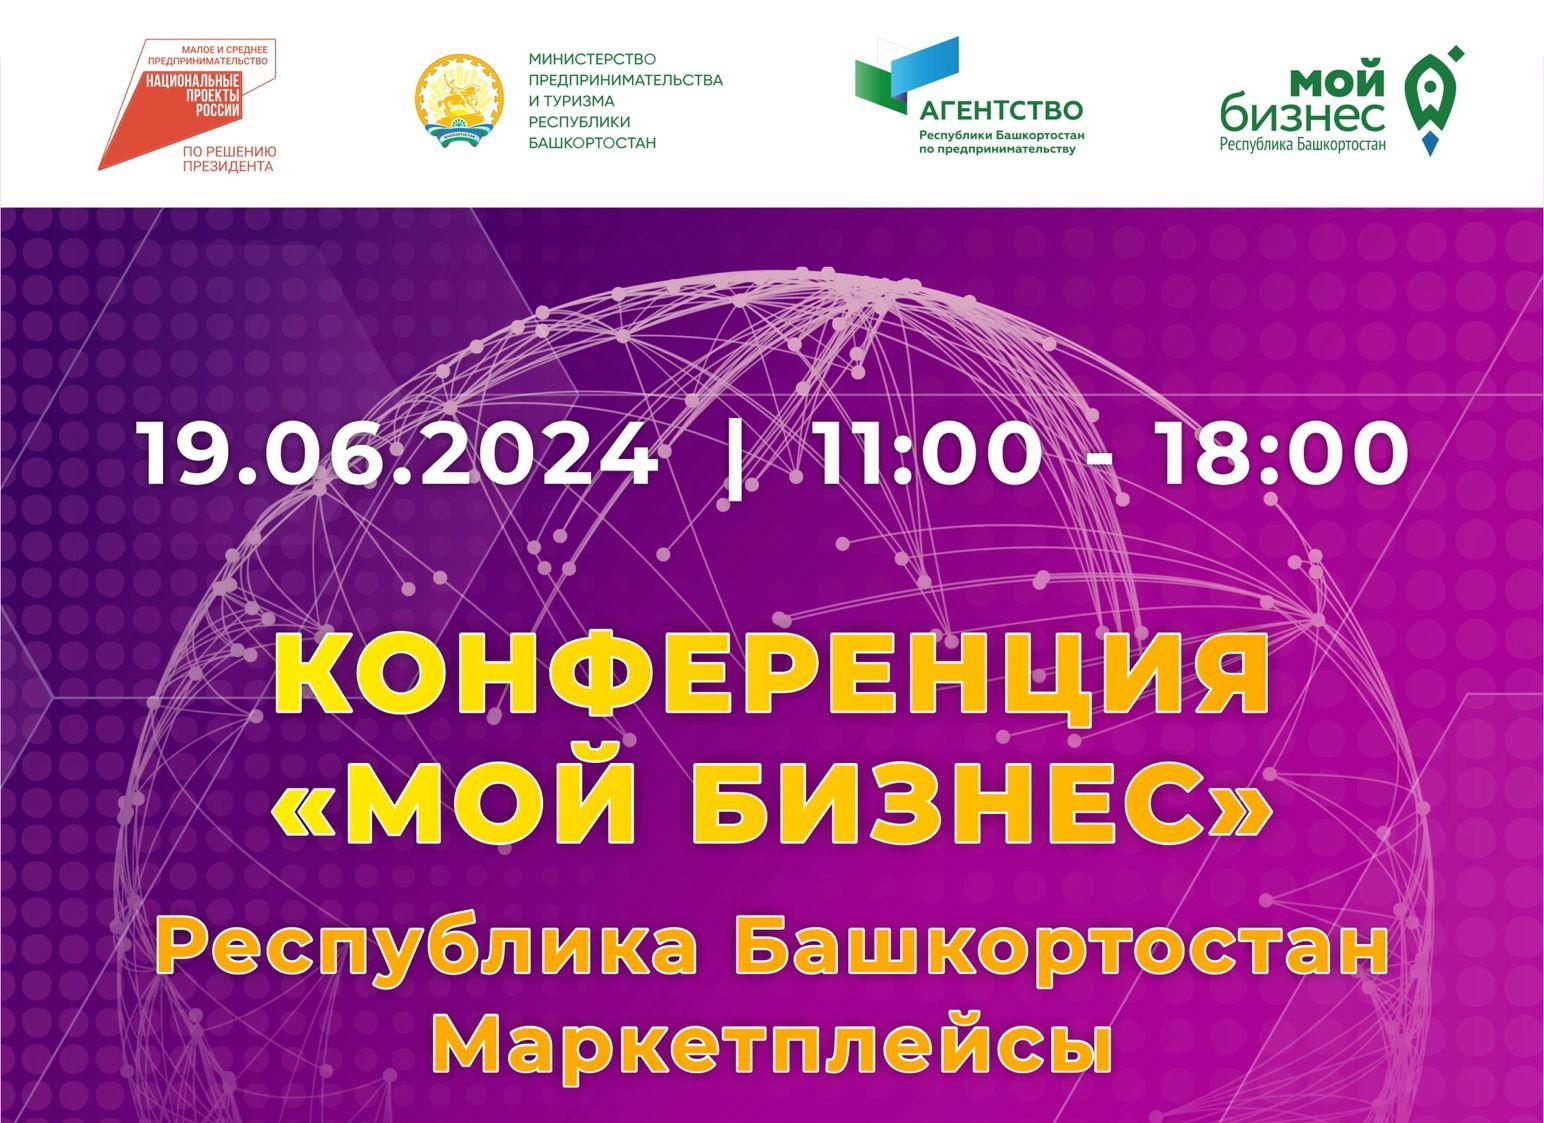 Приглашаем к участию в конференции «Мой бизнес» Республика Башкортостан. «Маркетплейсы»